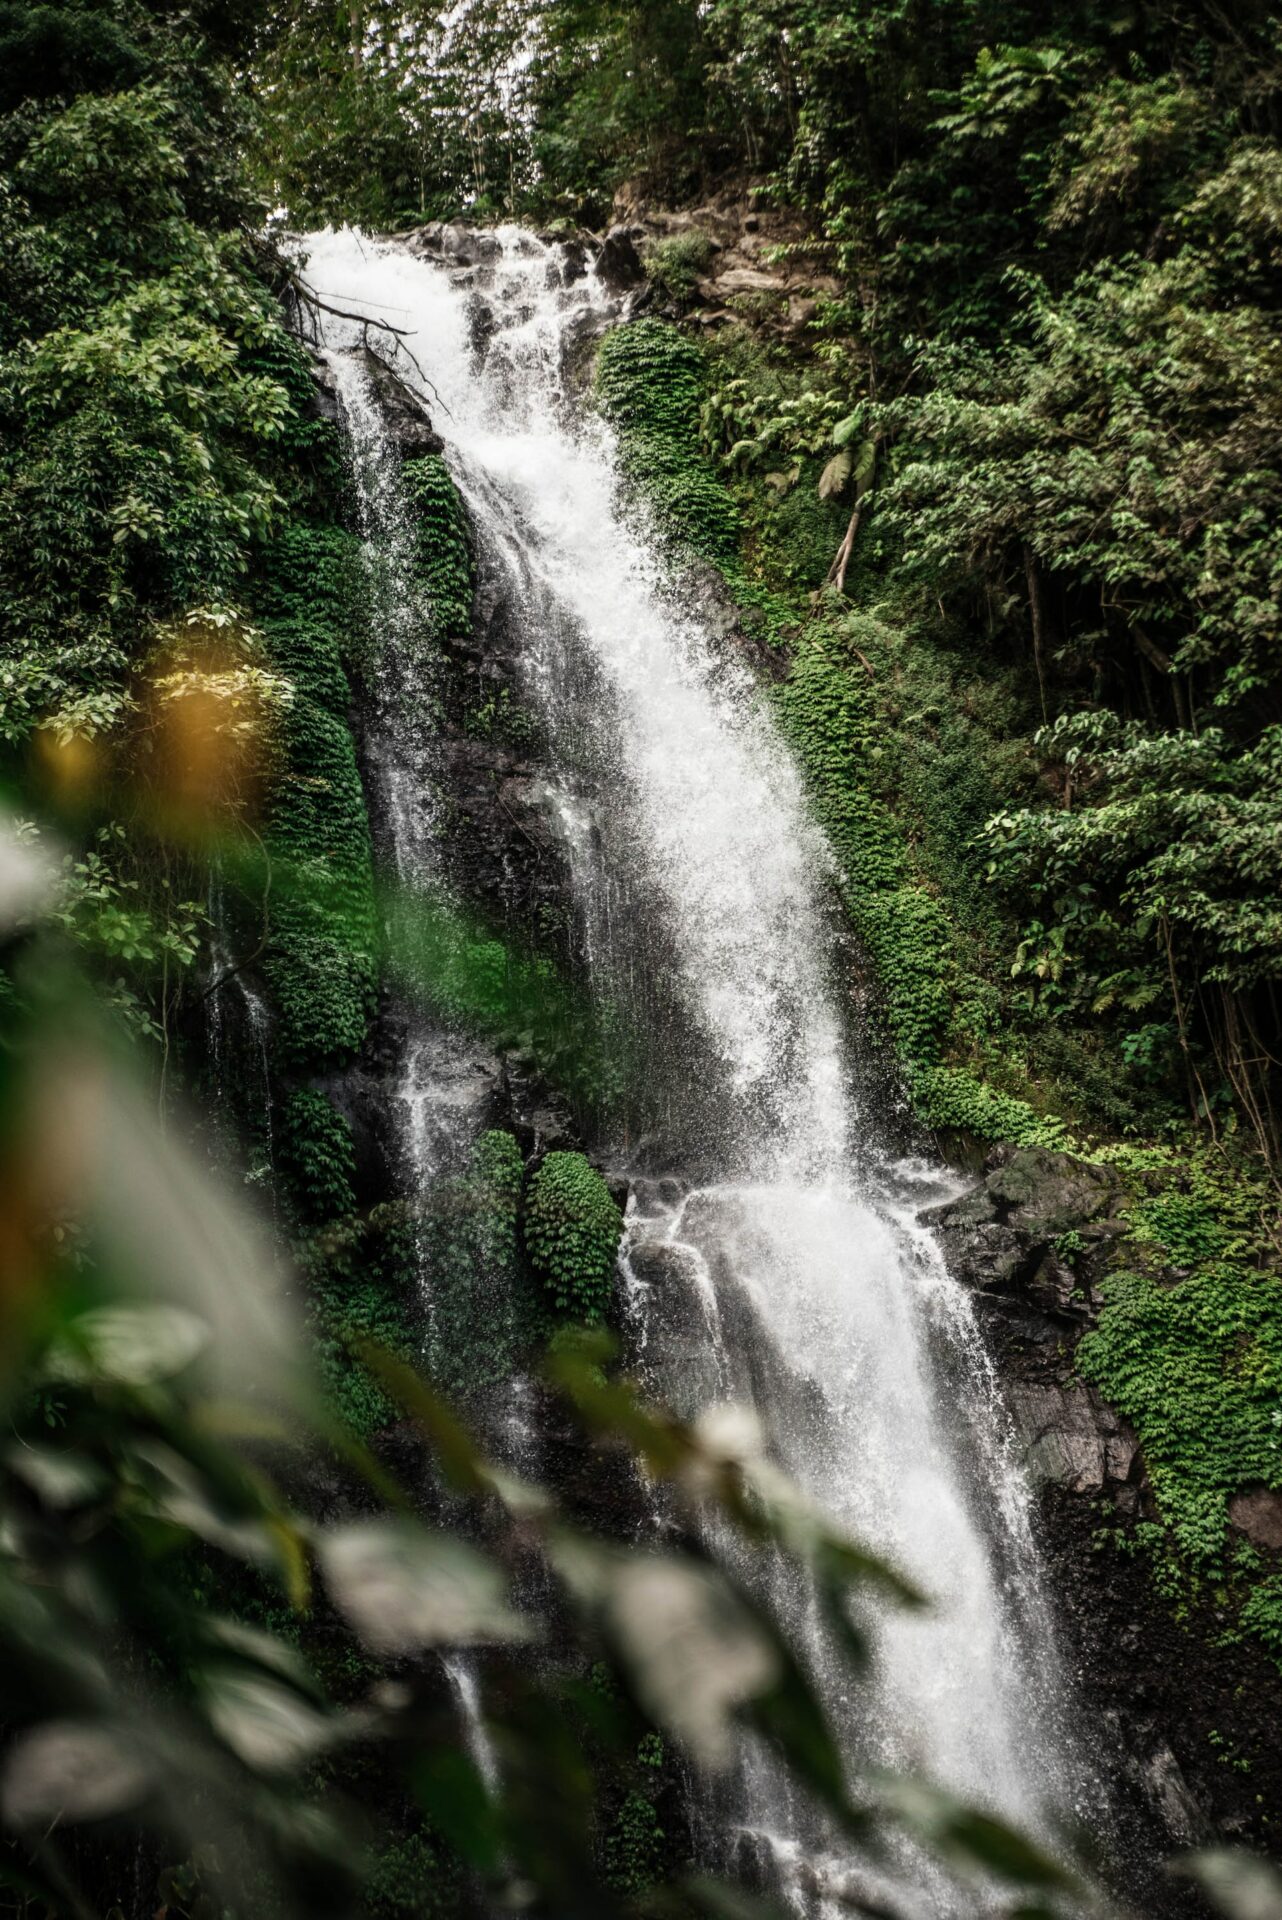 Melanting Waterfall in Munduk